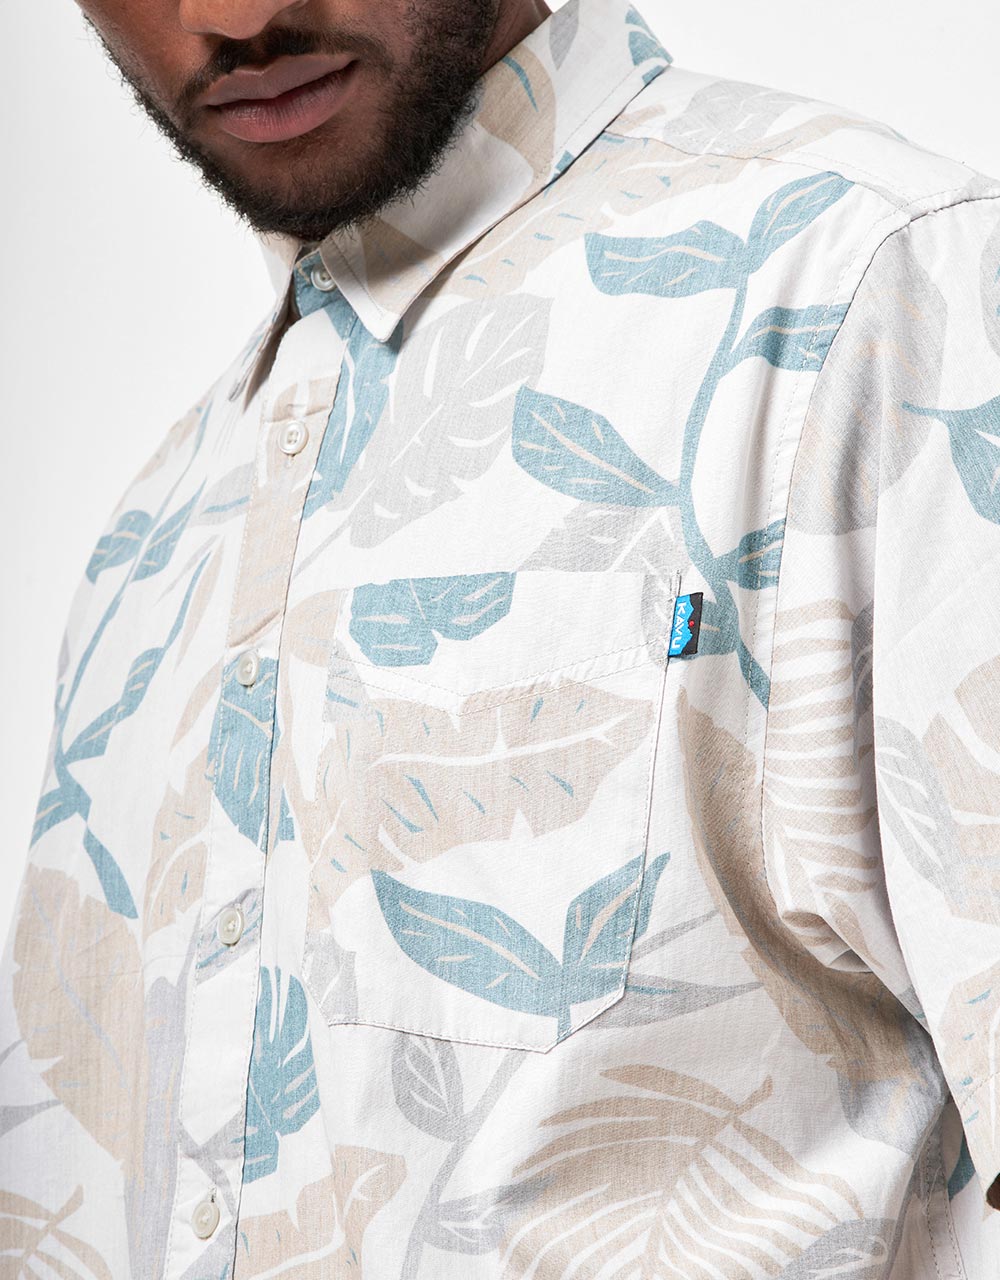 Kavu Topspot S/S Shirt - Frond Palm